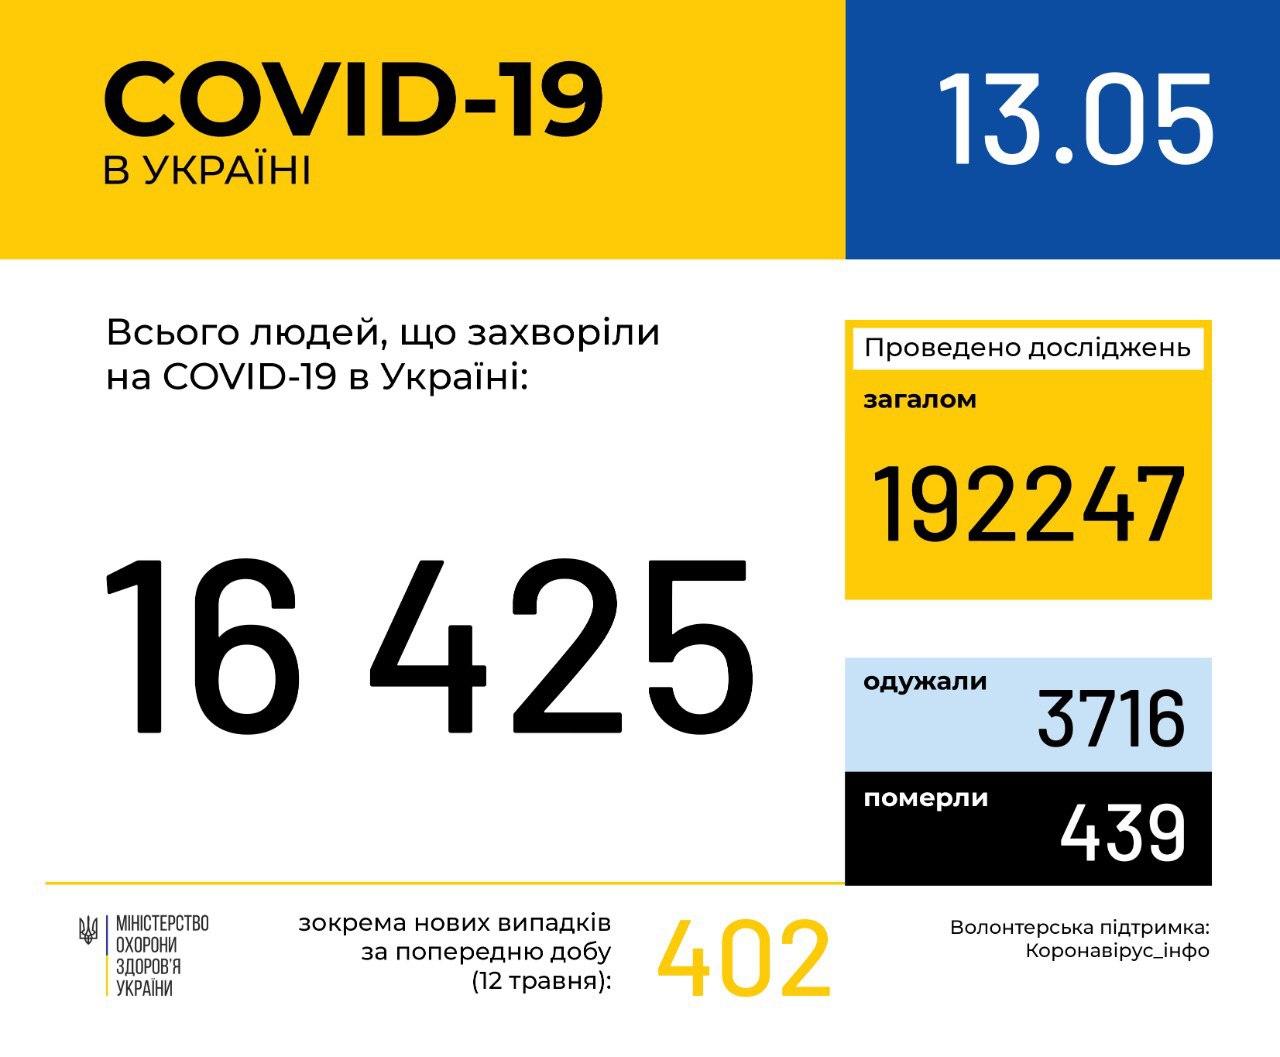 В Україні зафіксовано 16425 випадків коронавірусної хвороби COVID-19, - МОЗ